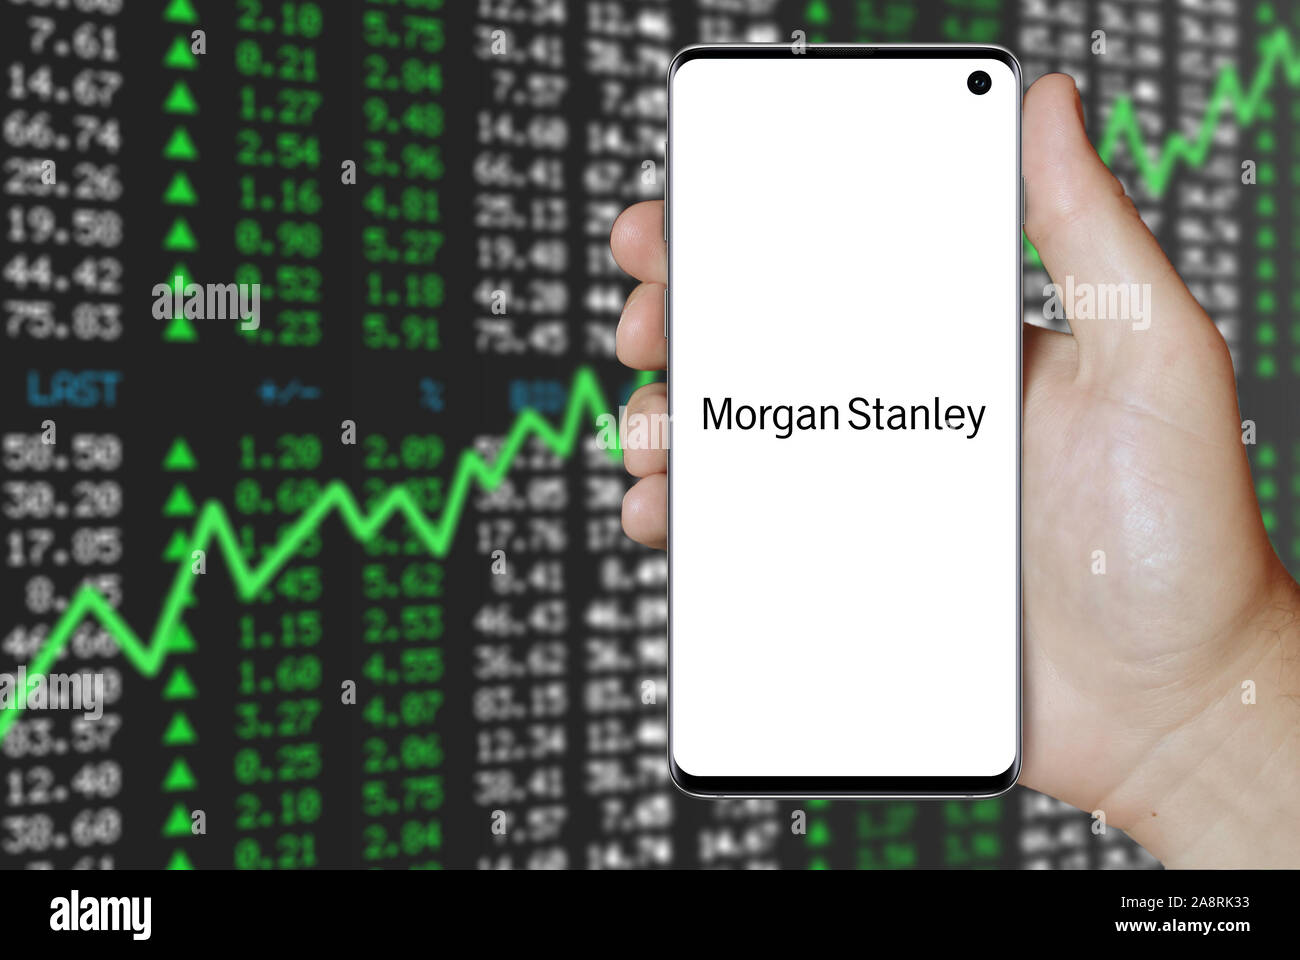 Logo de Morgan Stanley public affiché sur un smartphone. Marché des actions positives. Credit : PIXDUCE Banque D'Images